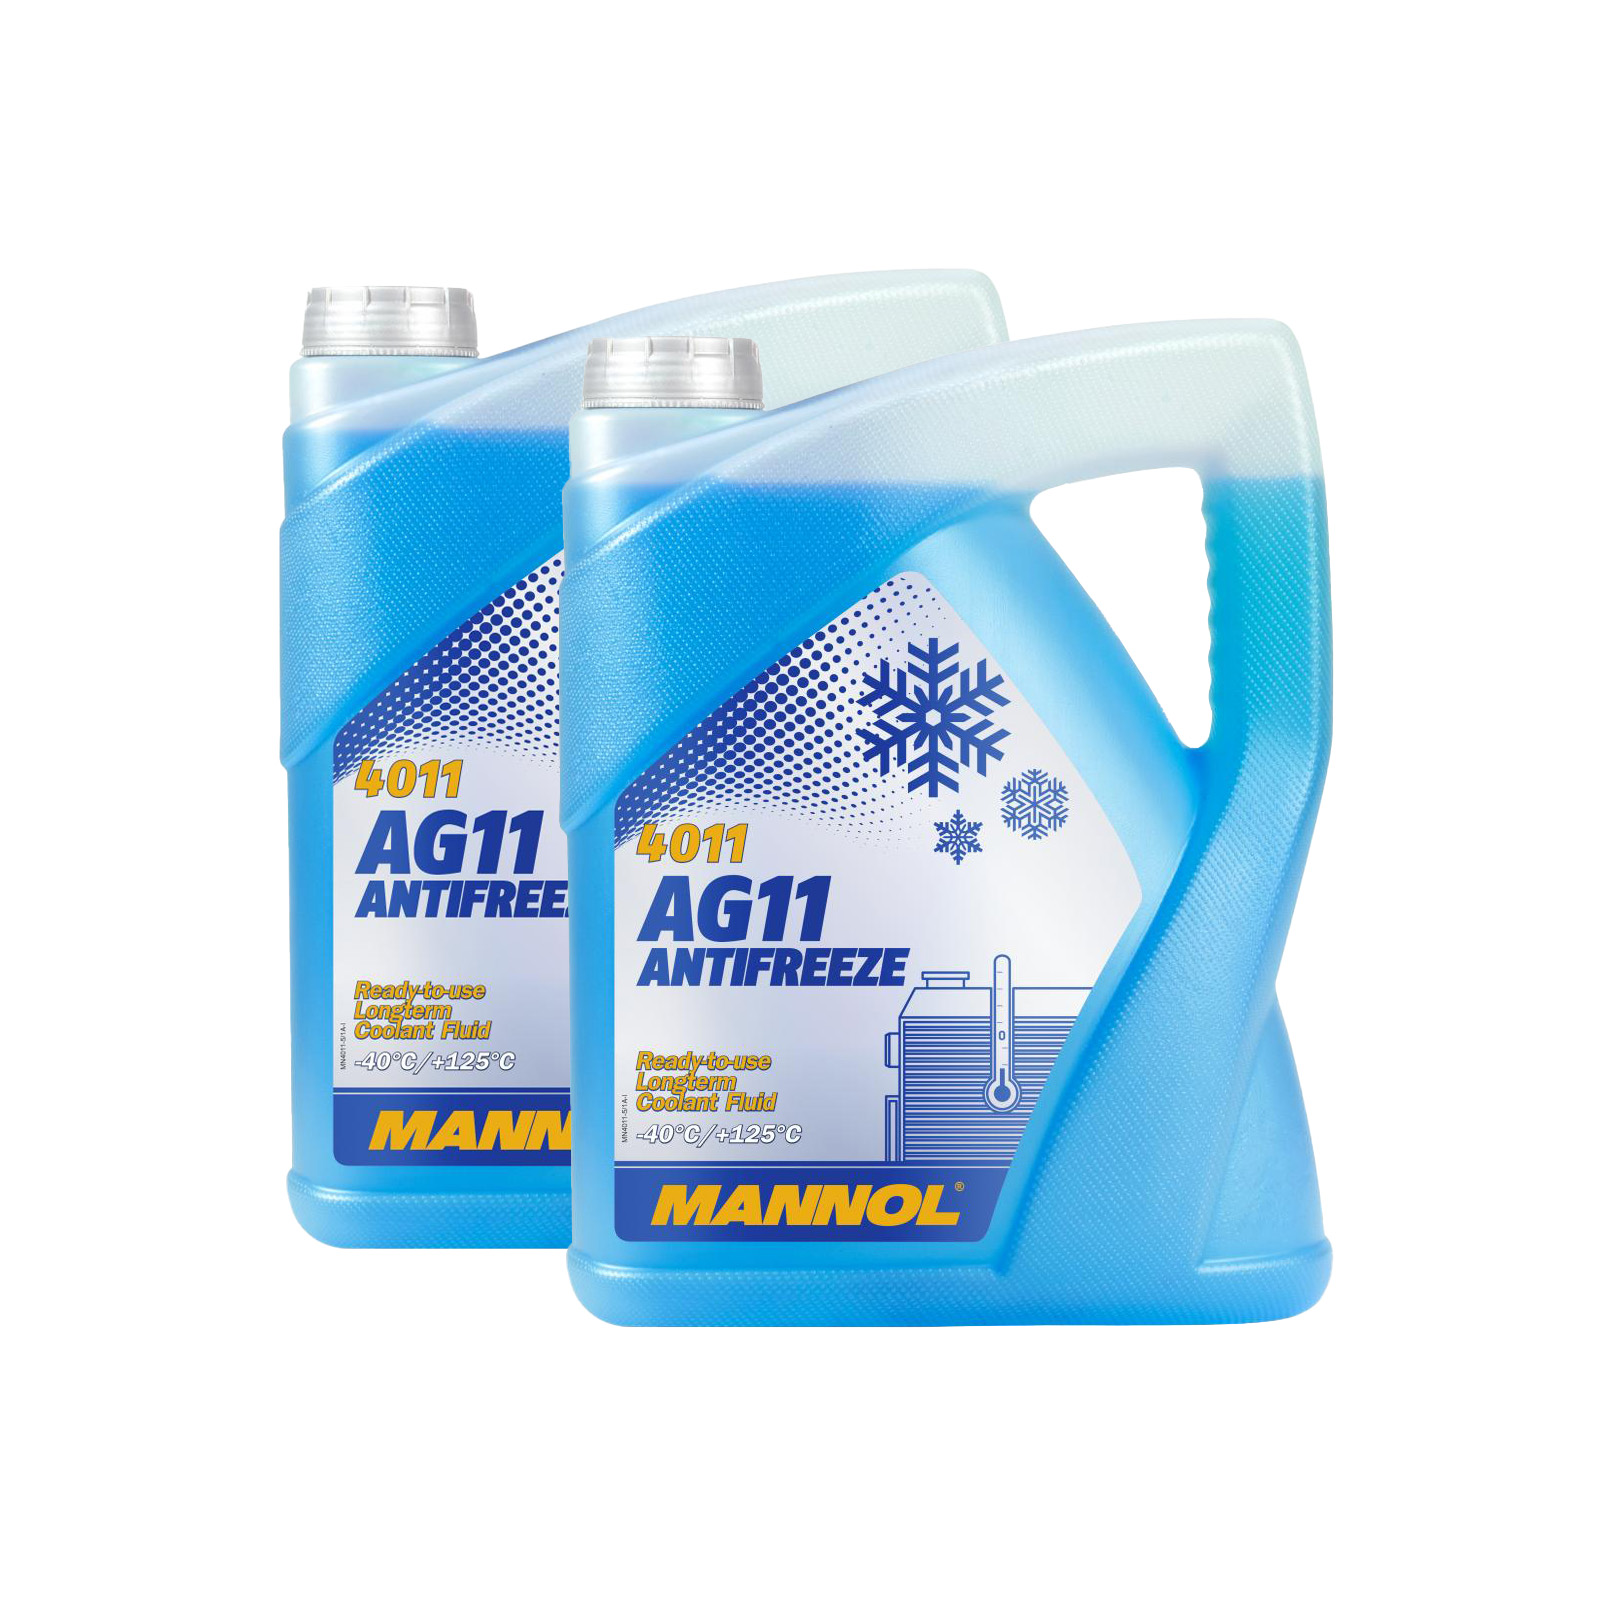 10 Liter (2x5) MANNOL Antifreeze AG11 Fertiggemisch blau (-40°C) G11 Kühlerfrostschutz